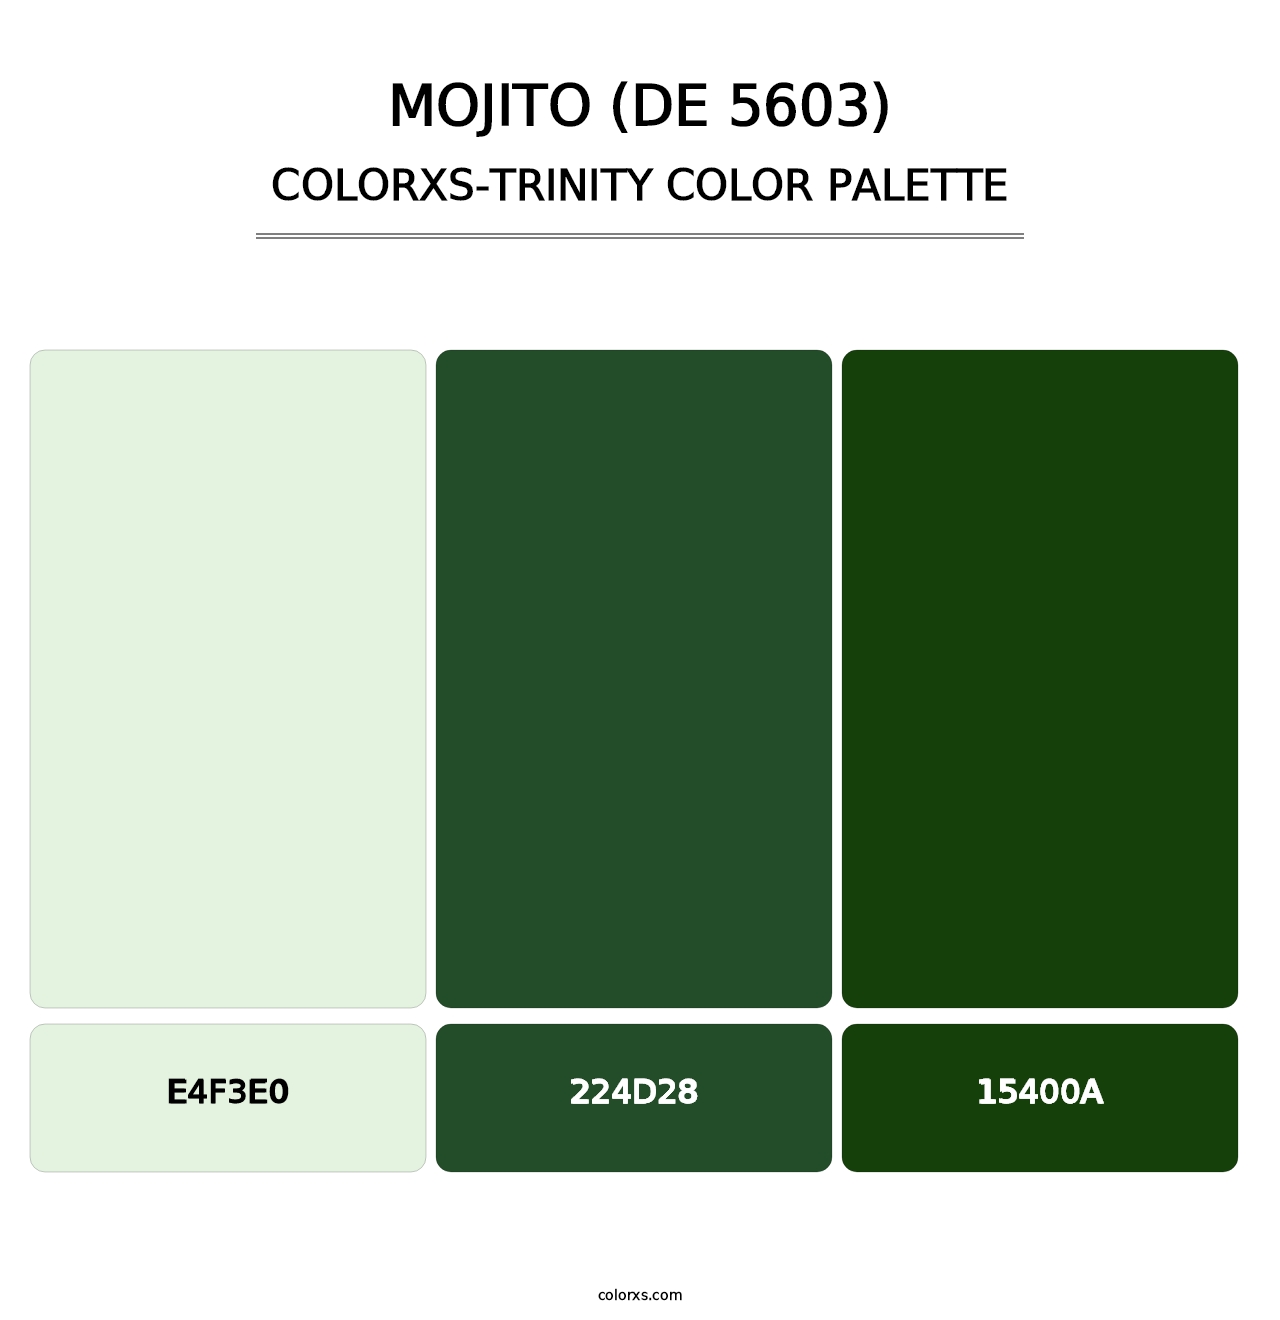 Mojito (DE 5603) - Colorxs Trinity Palette